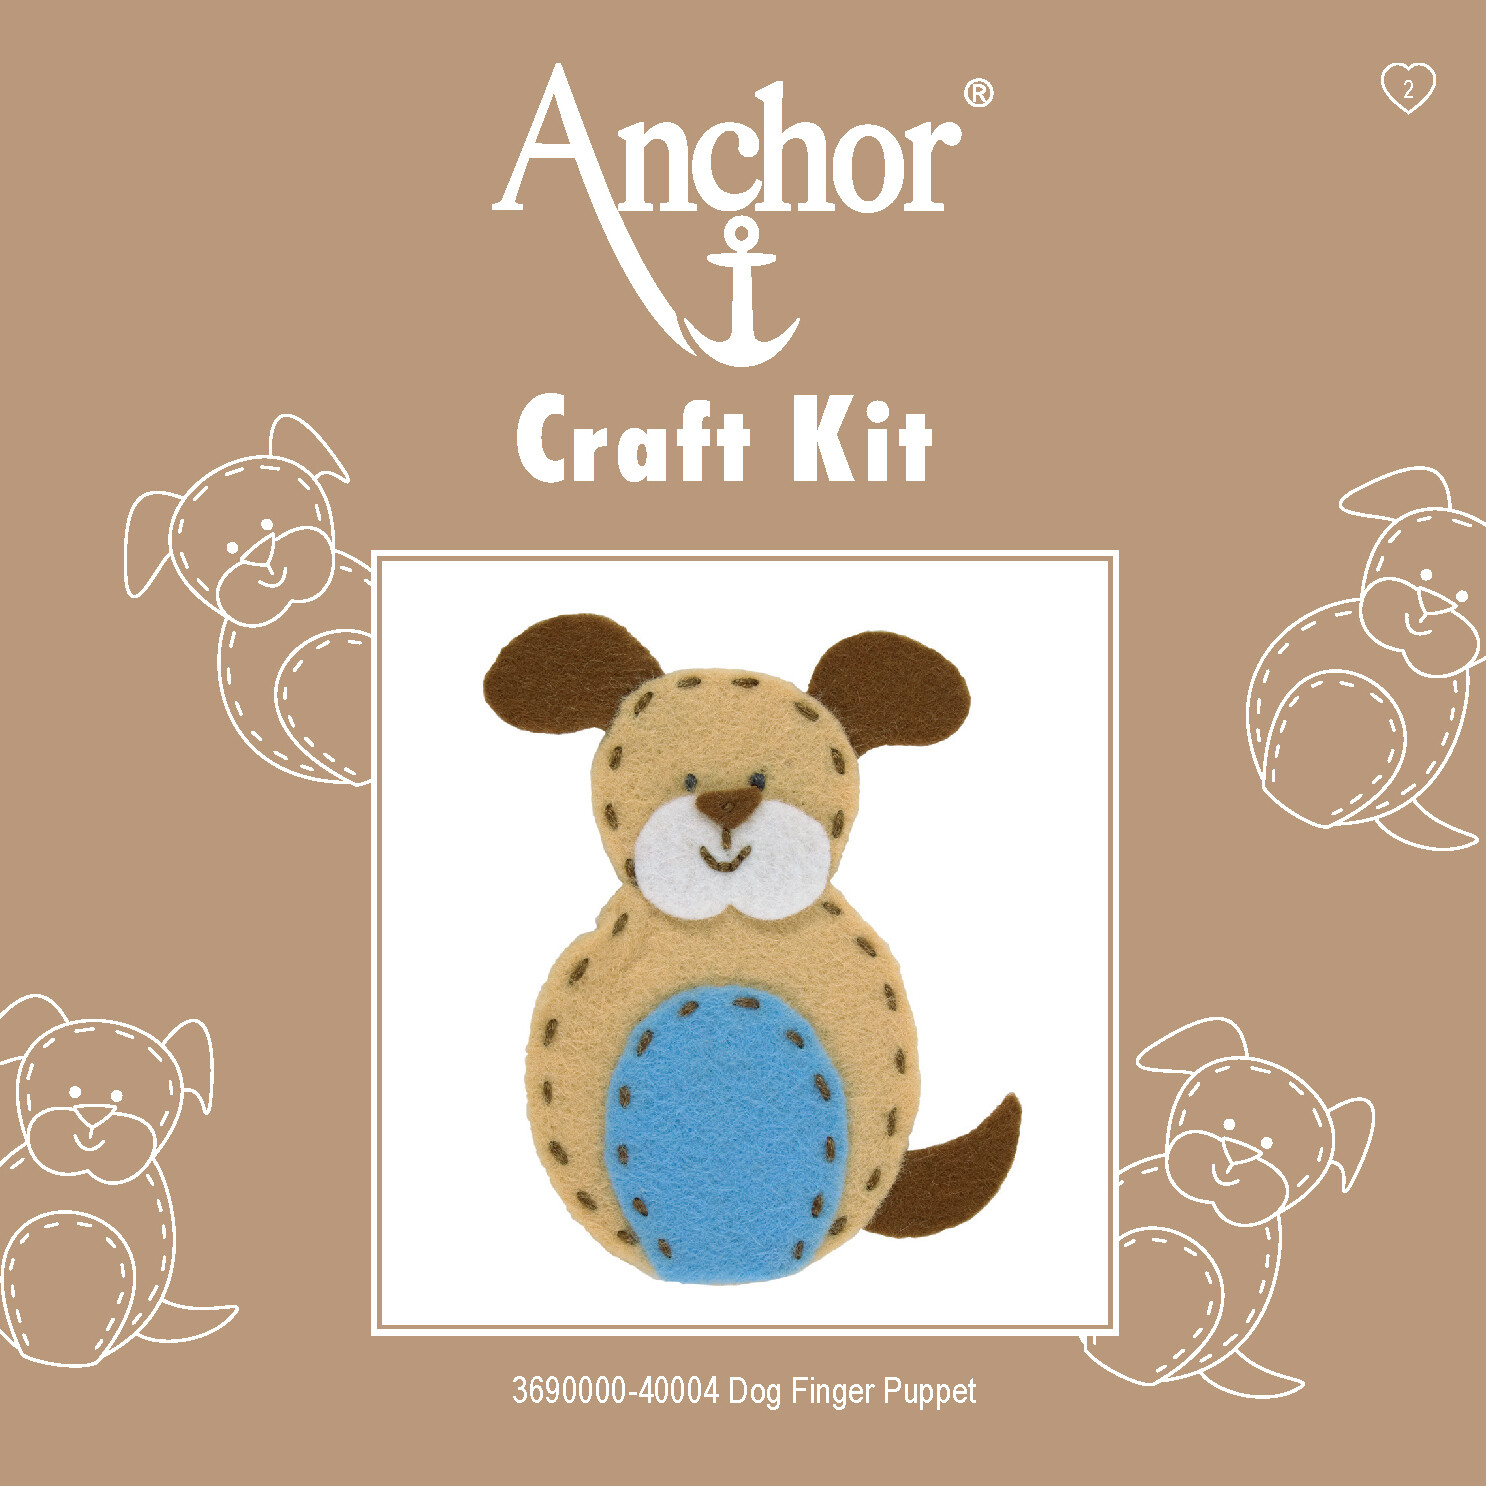 Anchor 1st Kit - Dog Finger Puppet